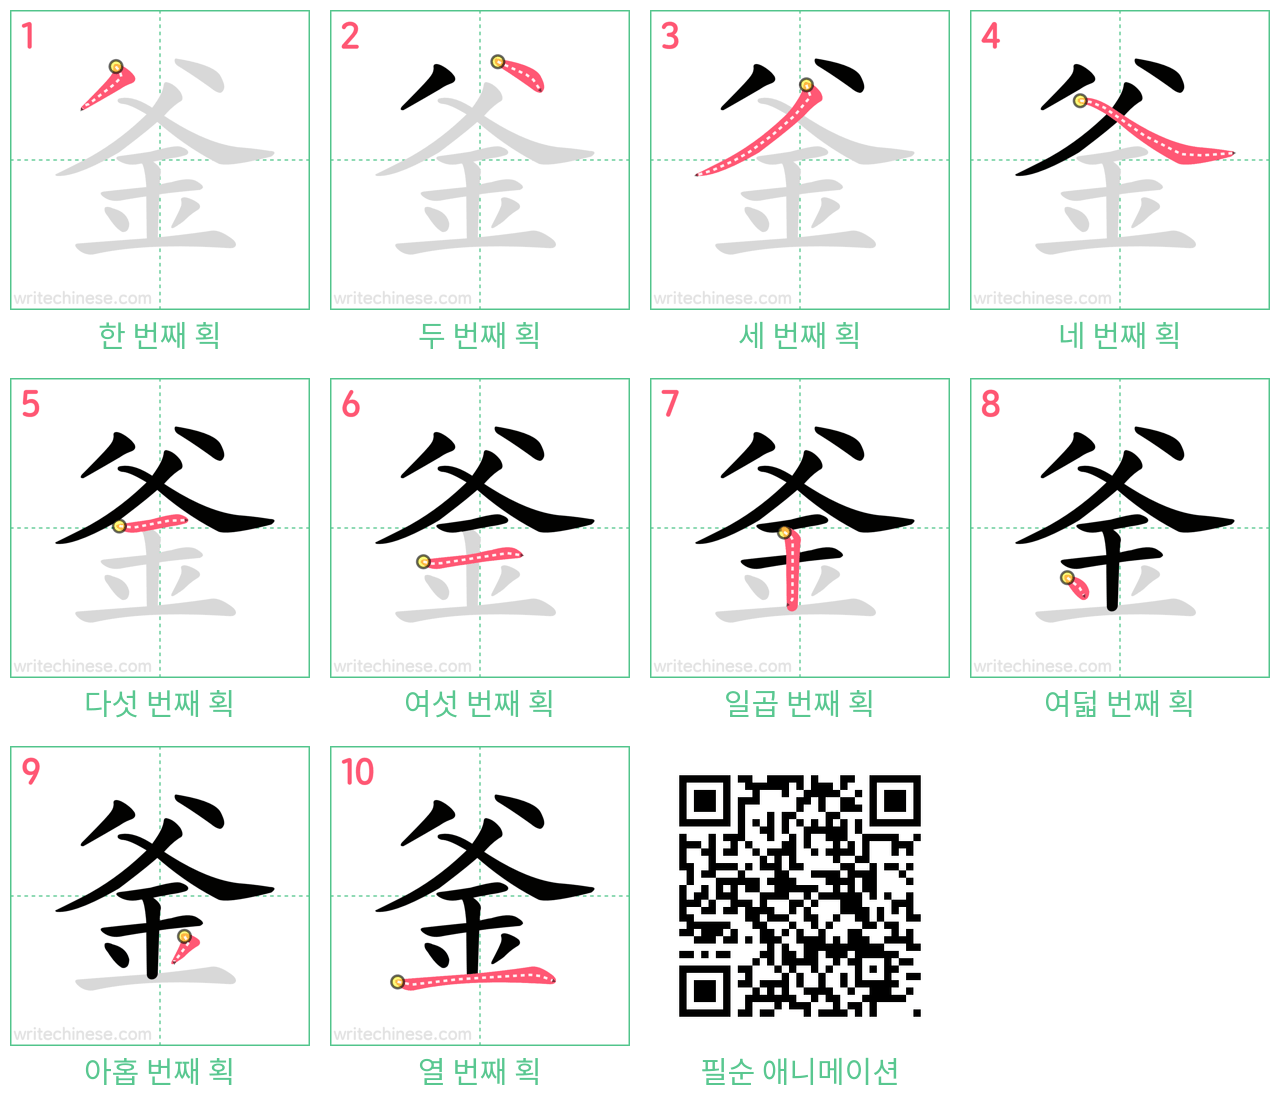 釜 step-by-step stroke order diagrams